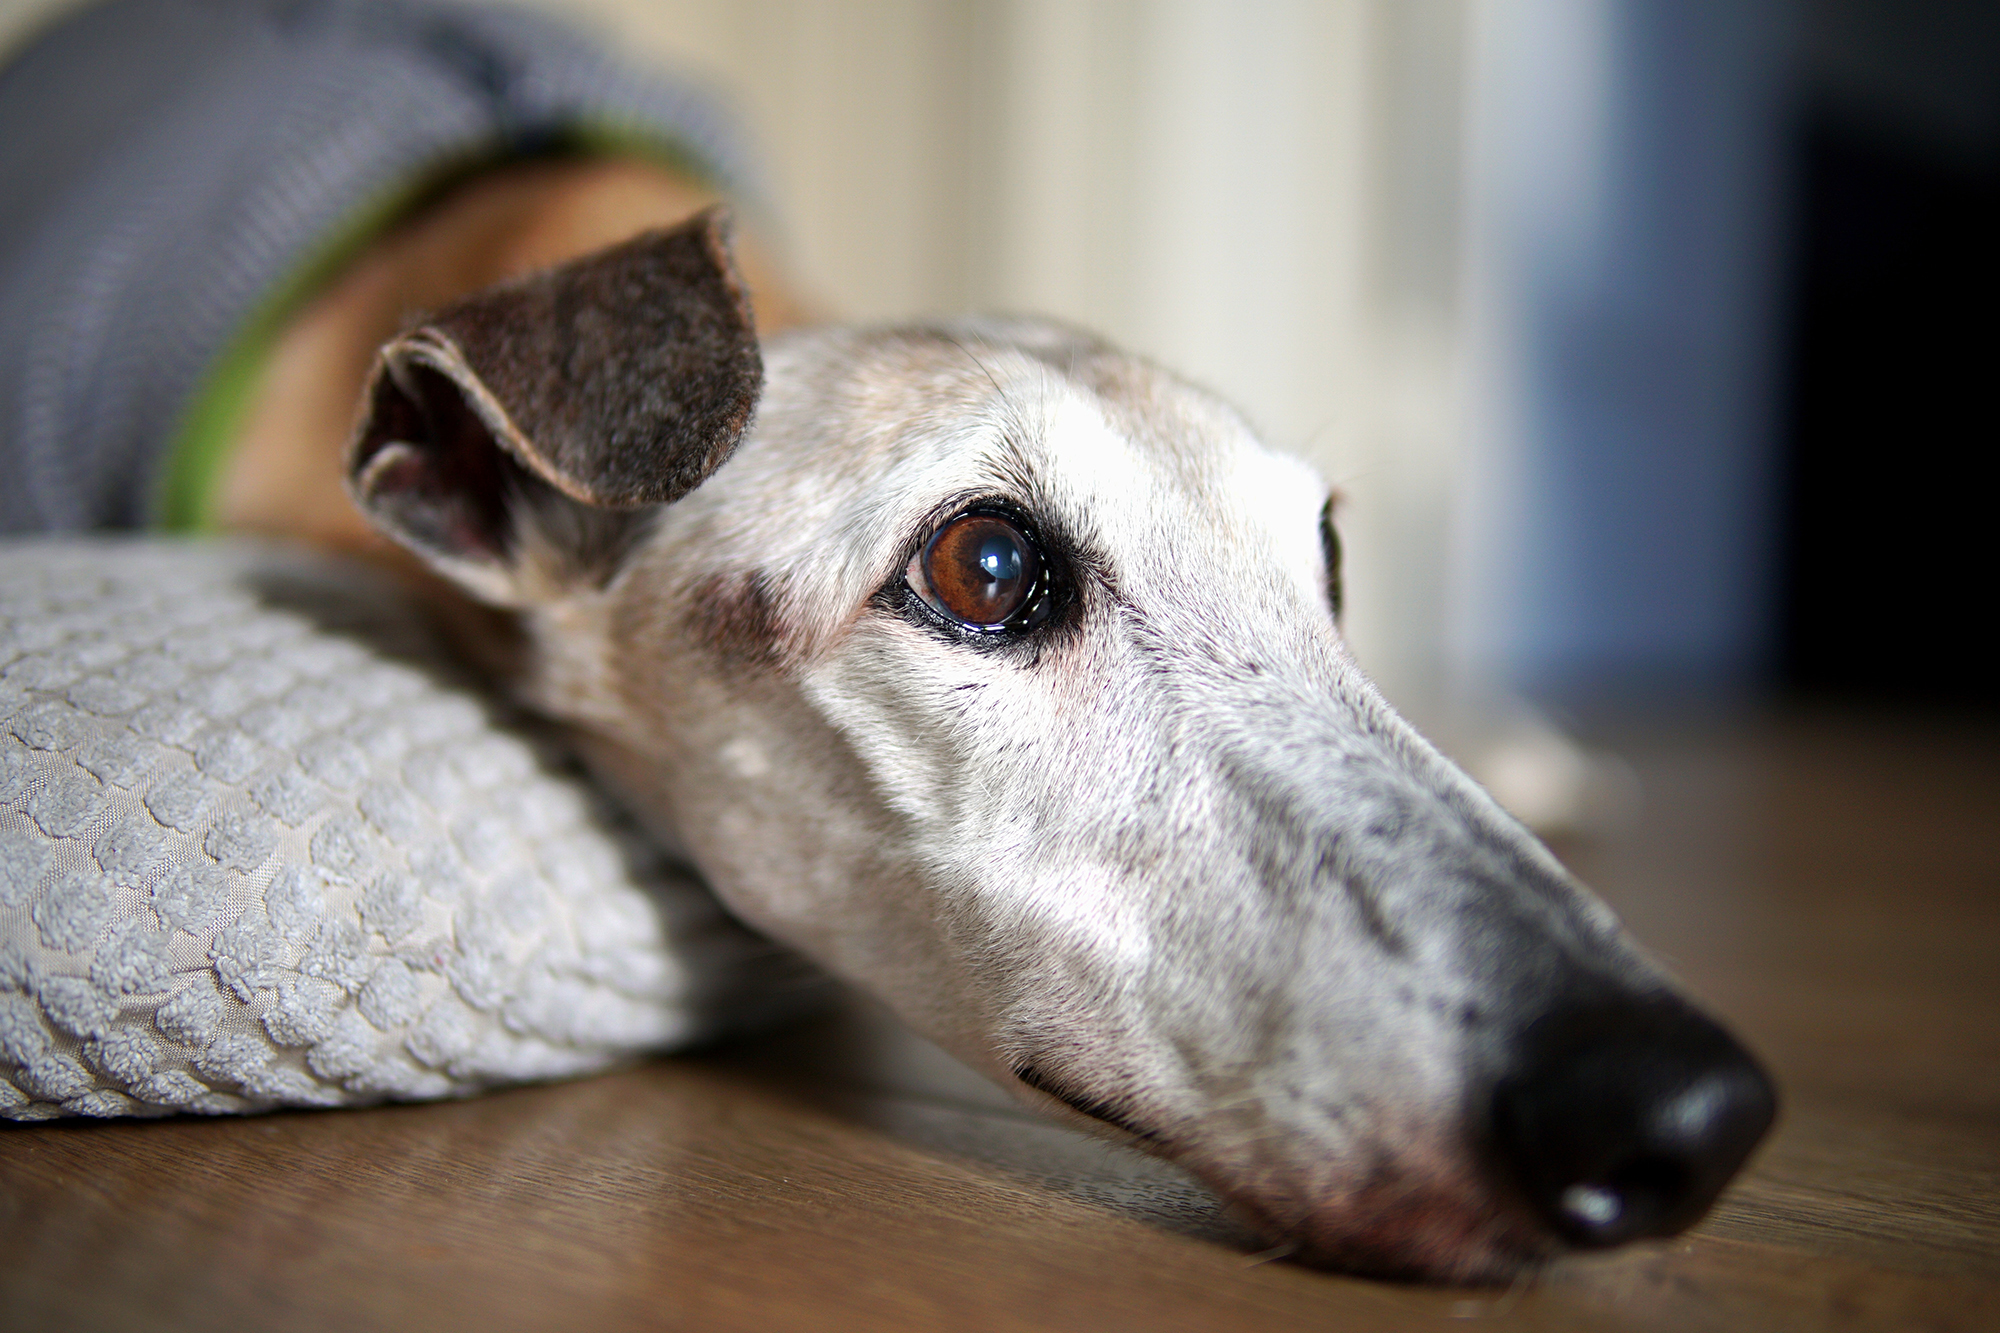 A kutatás szerint a hosszú orrú kutyák, például az agarak, illetve a fajtatiszta kutyák esetében nagyobb a kockázata az időskori kognitív hanyatlás kialakulásának